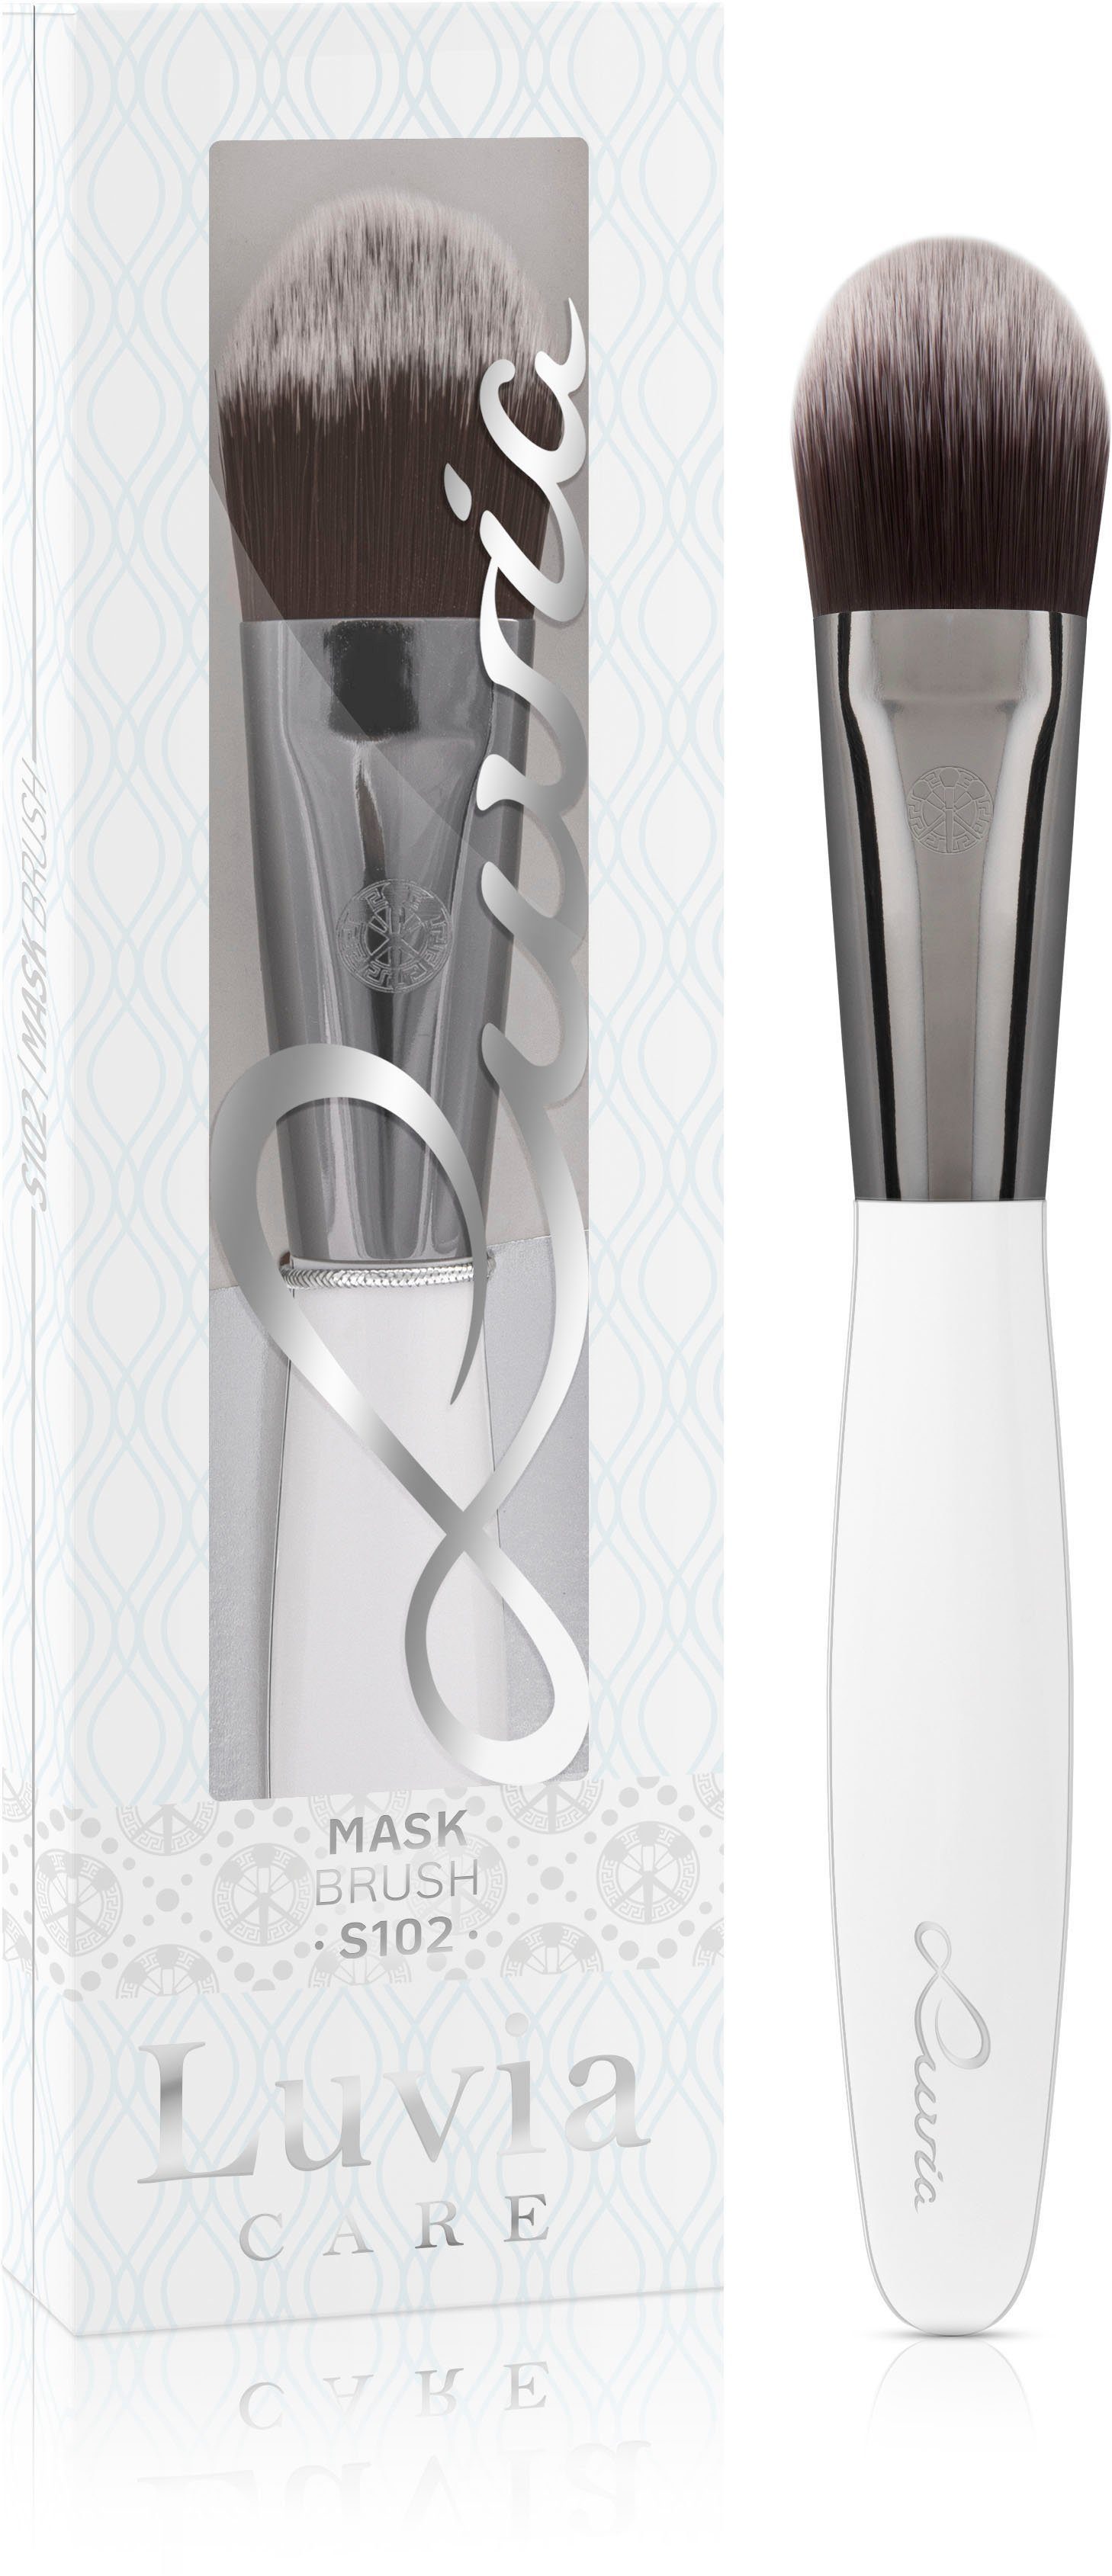 Cosmetics Brush Mask Luvia Maskenpinsel